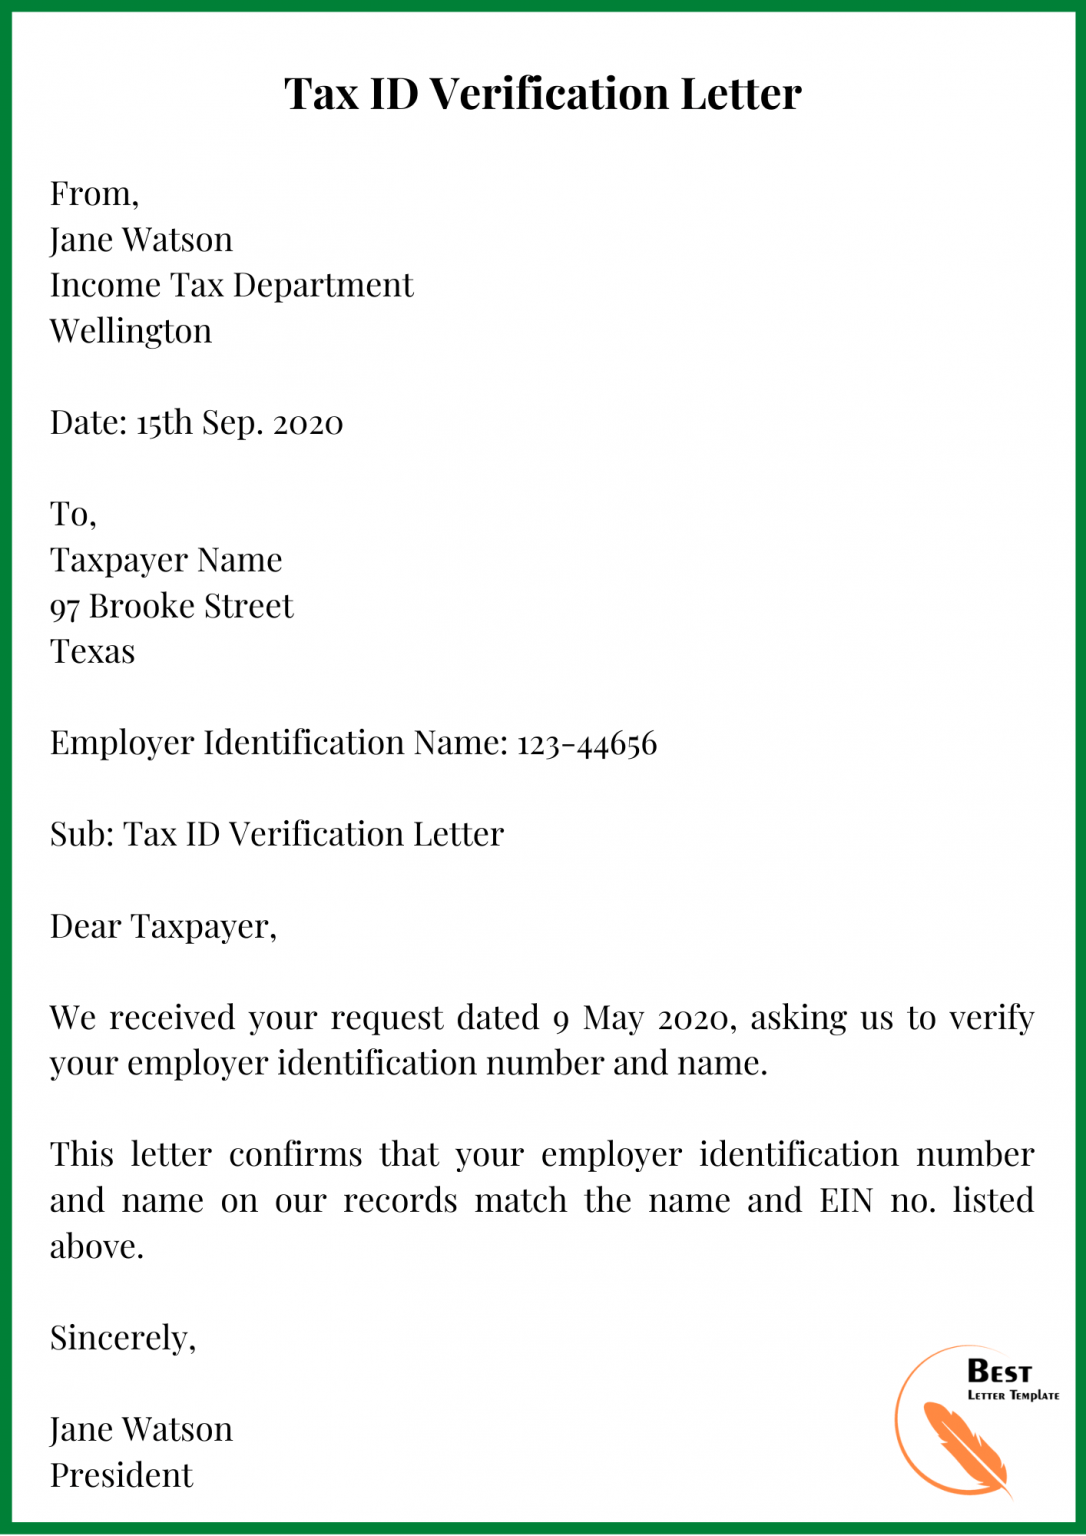 Tax ID Verification Letter 1086x1536 